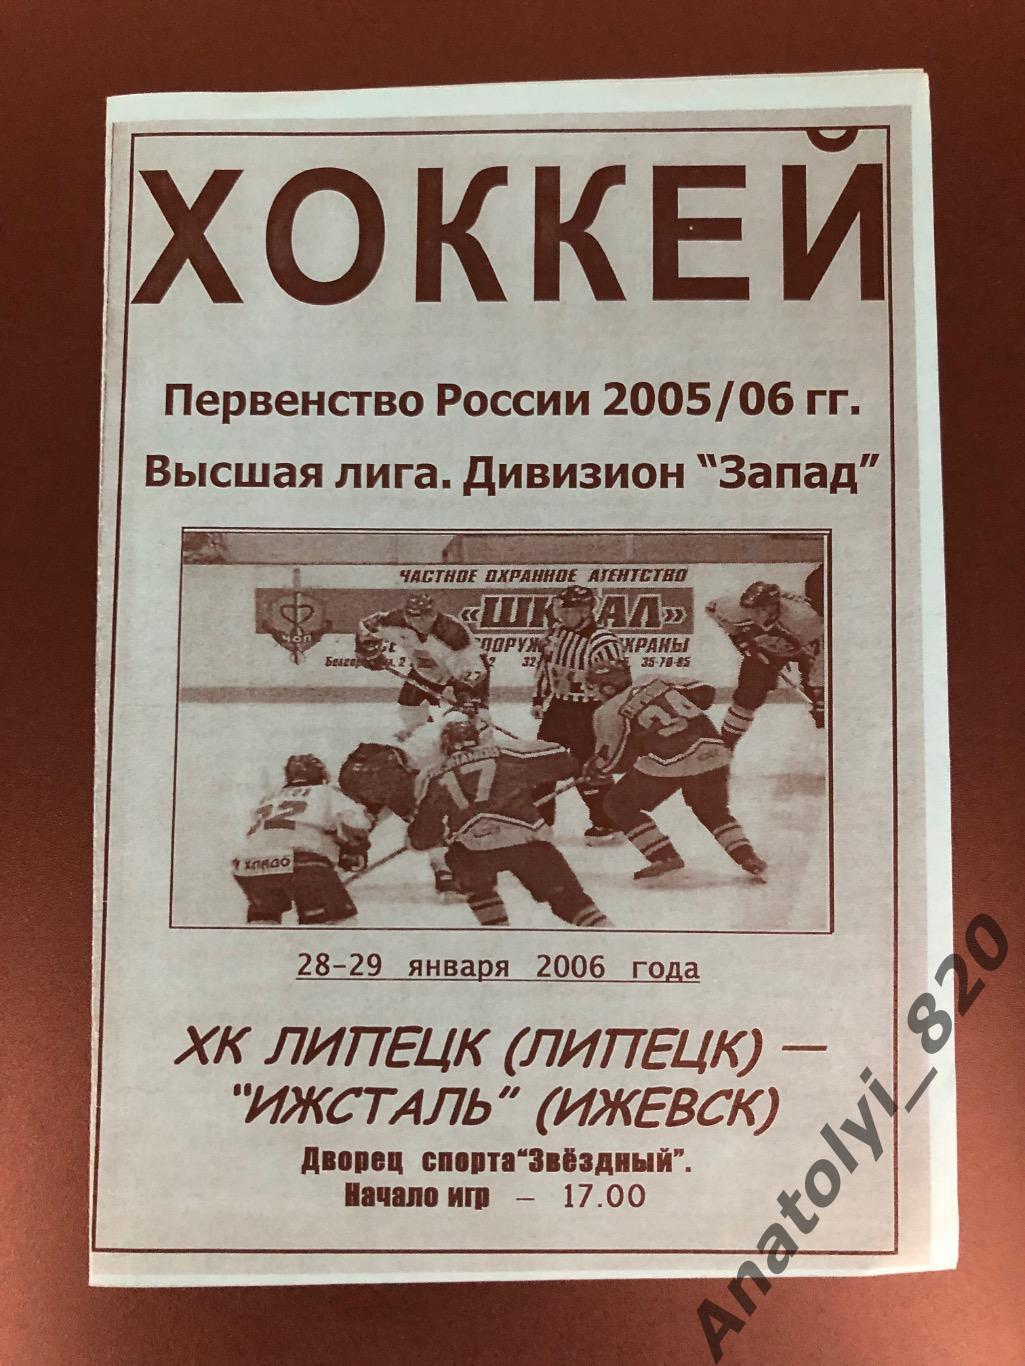 ХК Липецк - ХК Ижсталь Ижевск, 28-29.01.2006